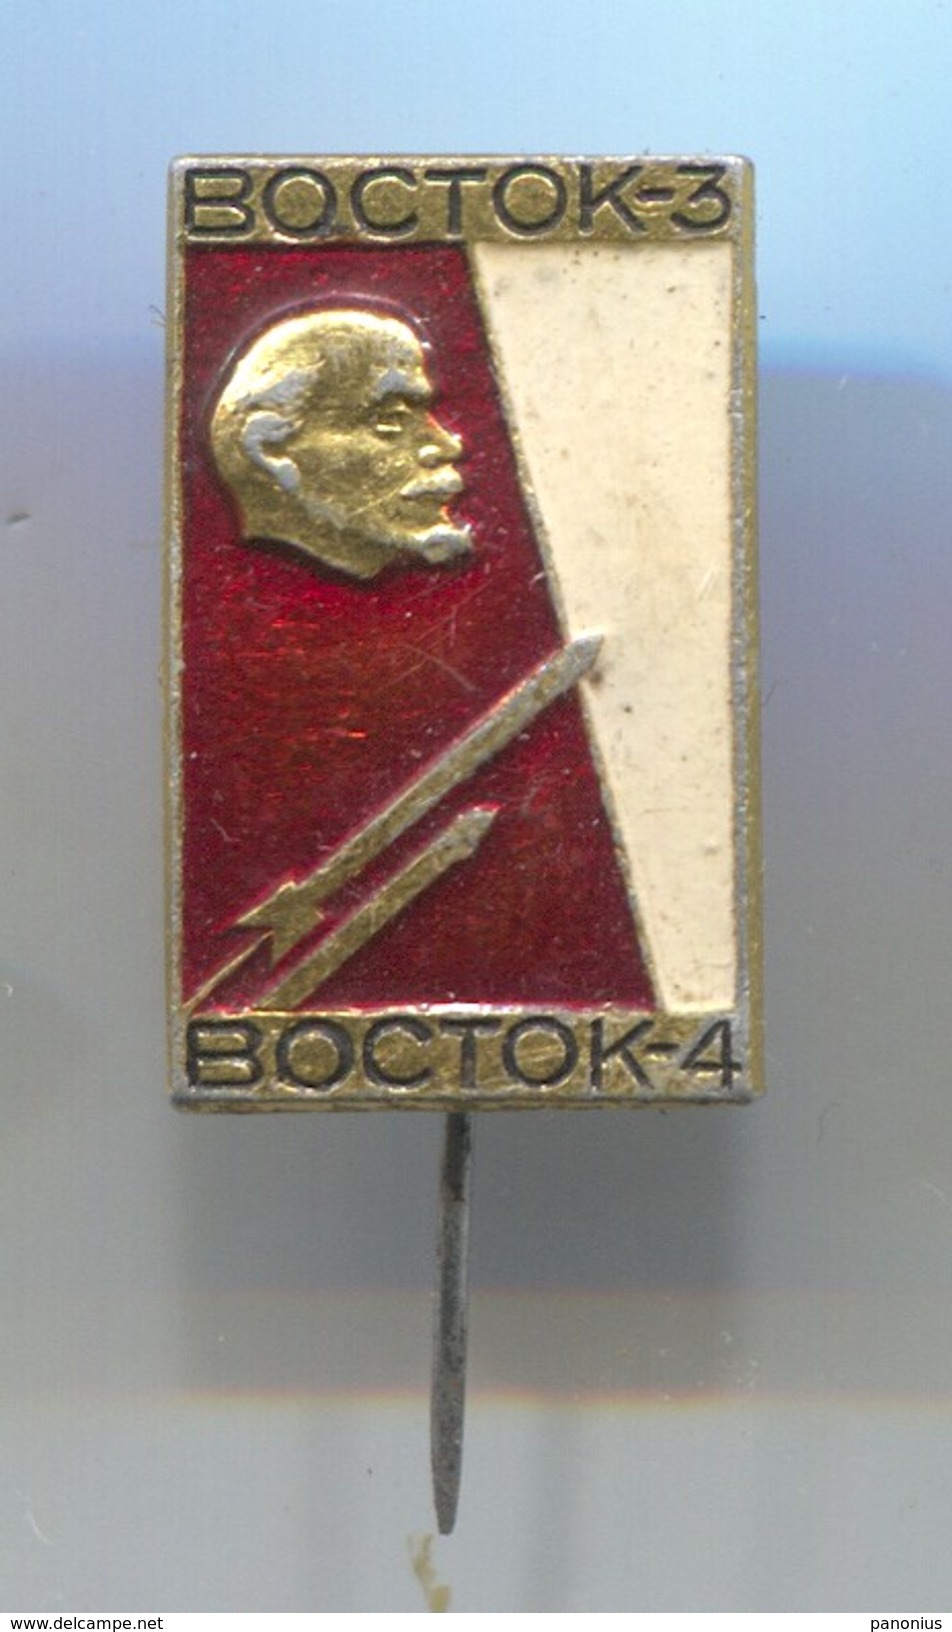 Space, Cosmos, Spaceship Programe - Russia USSR, Soviet Era, VOSTOK, LENIN, Vintage Pin Badge, Abzeichen - Raumfahrt